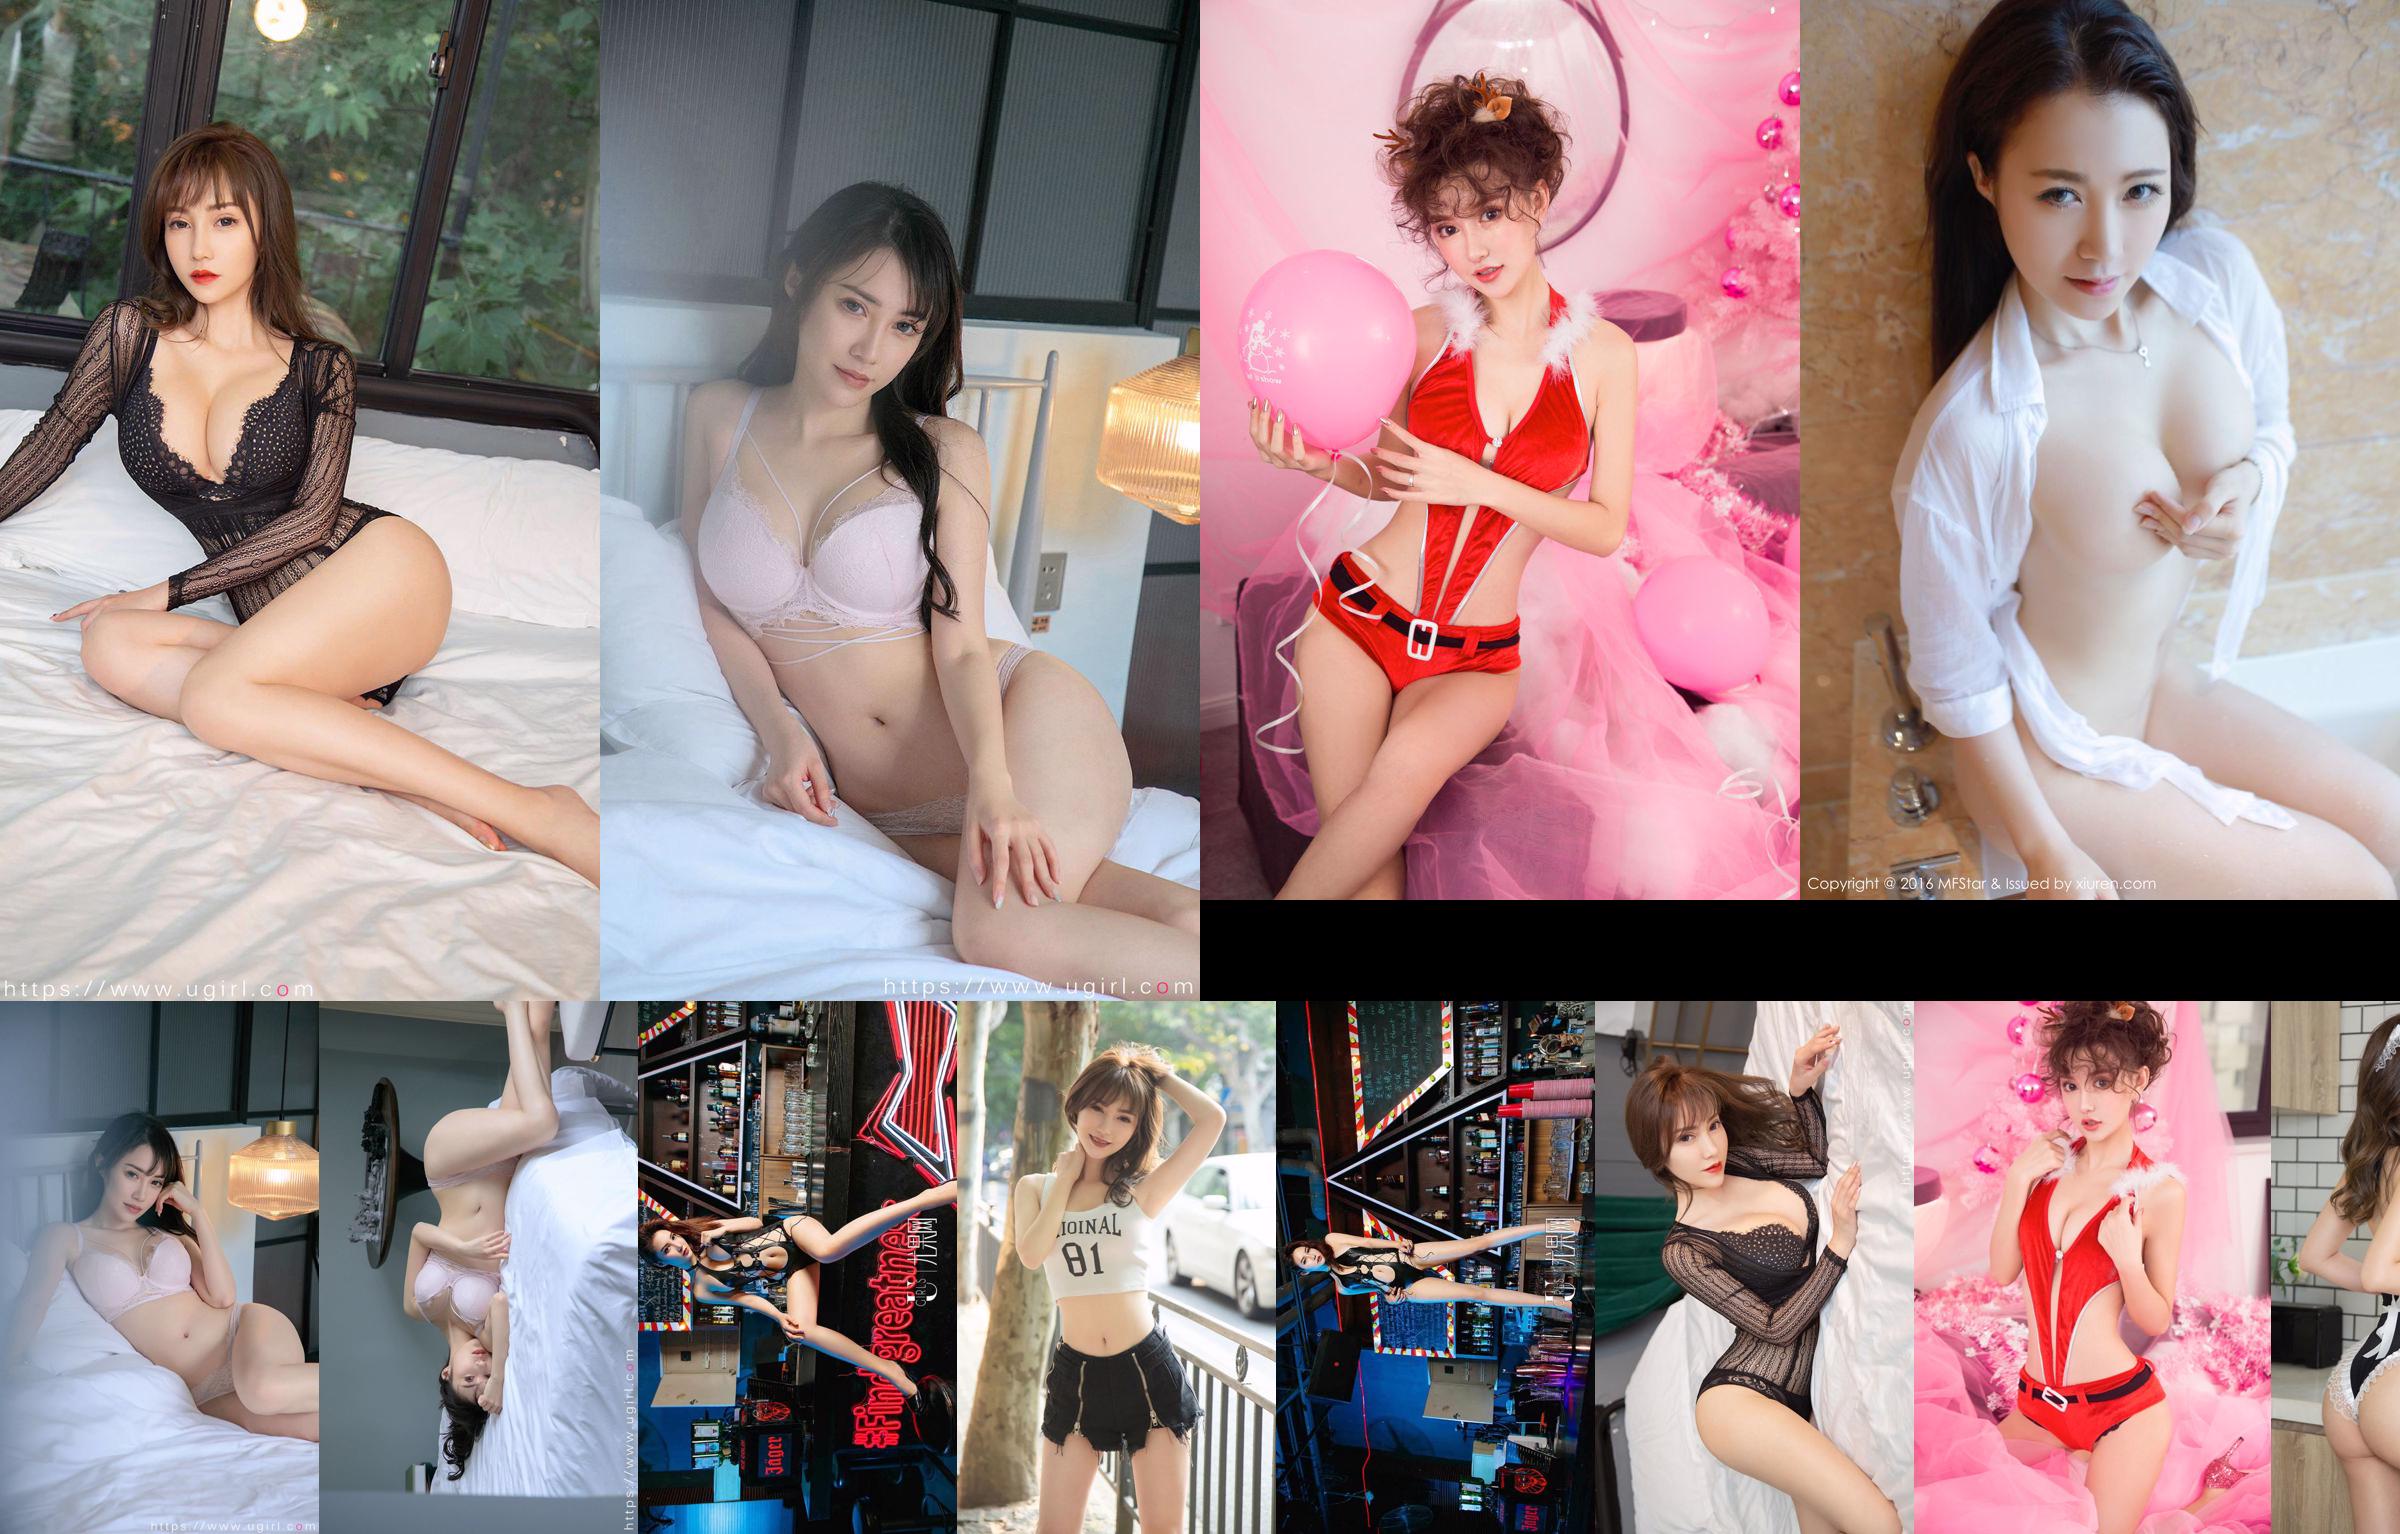 [爱尤物Ugirls] No.2179 Xia Lingman&Meidi&Angela&Qingshu&Anaela Chuchu&Liu Yuxin&Guoer Victoria pełna miłości No.2d06db Strona 9